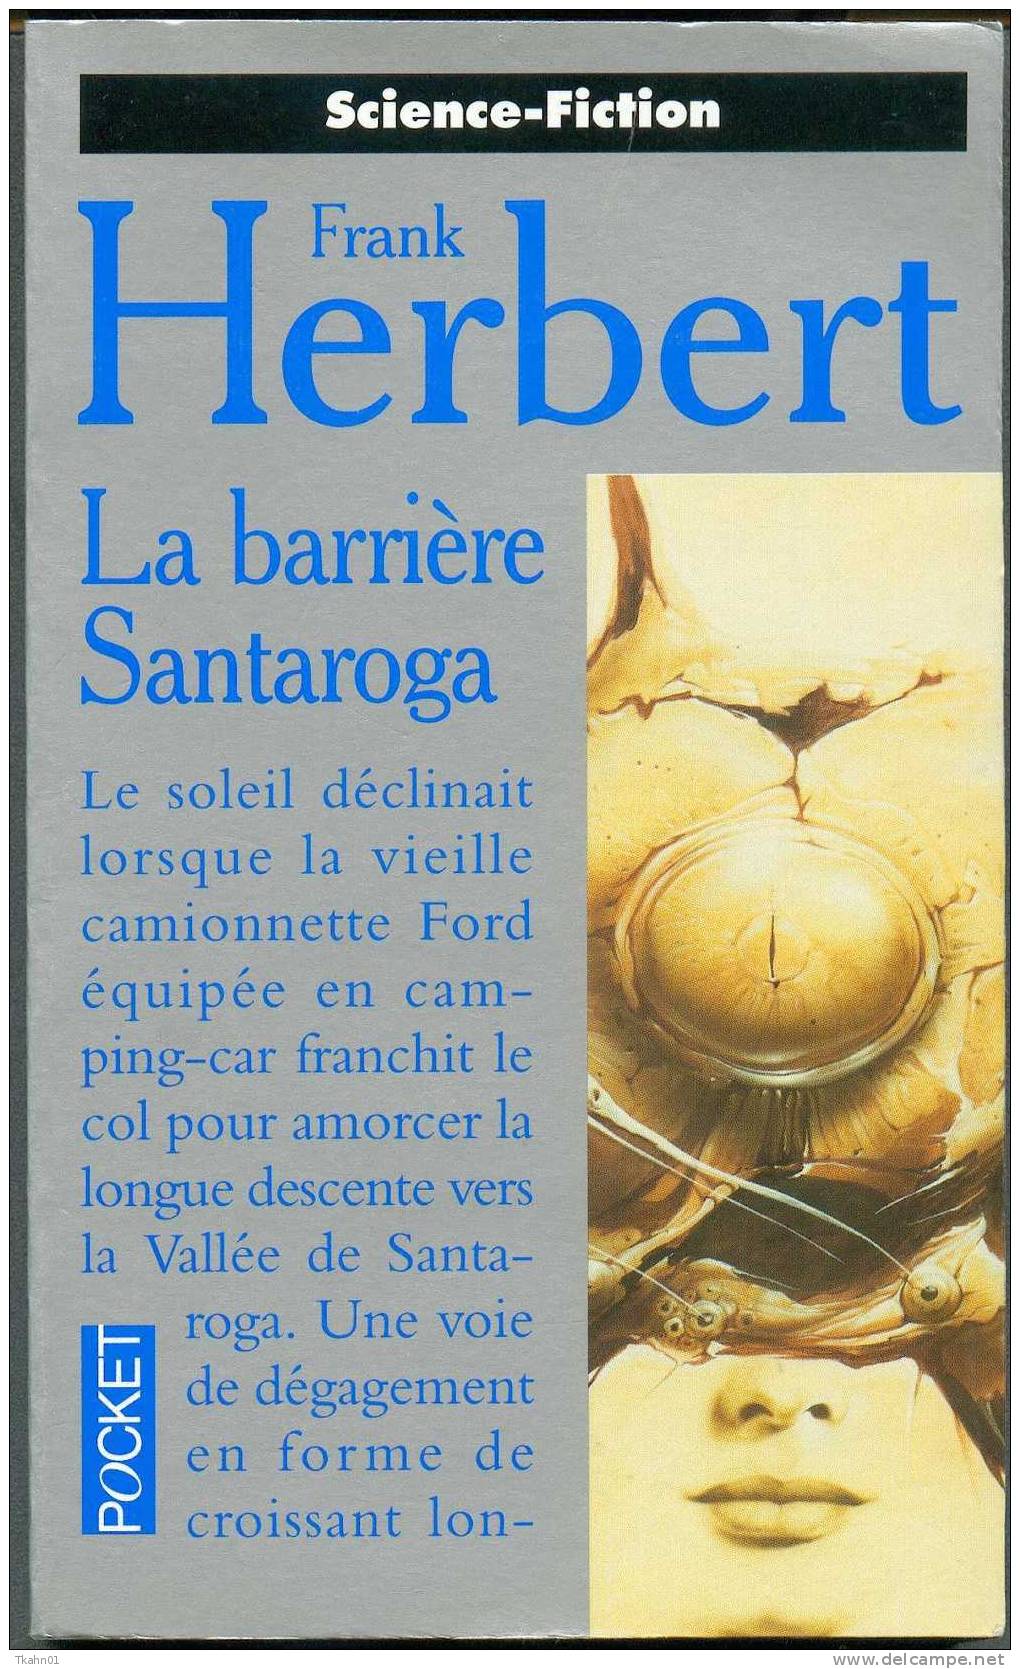 PRESSES-POCKET S-F N° 5283 " LA BARRIERE SANTAROGA " FRANK-HERBERT AVEC 311 PAGES - Presses Pocket